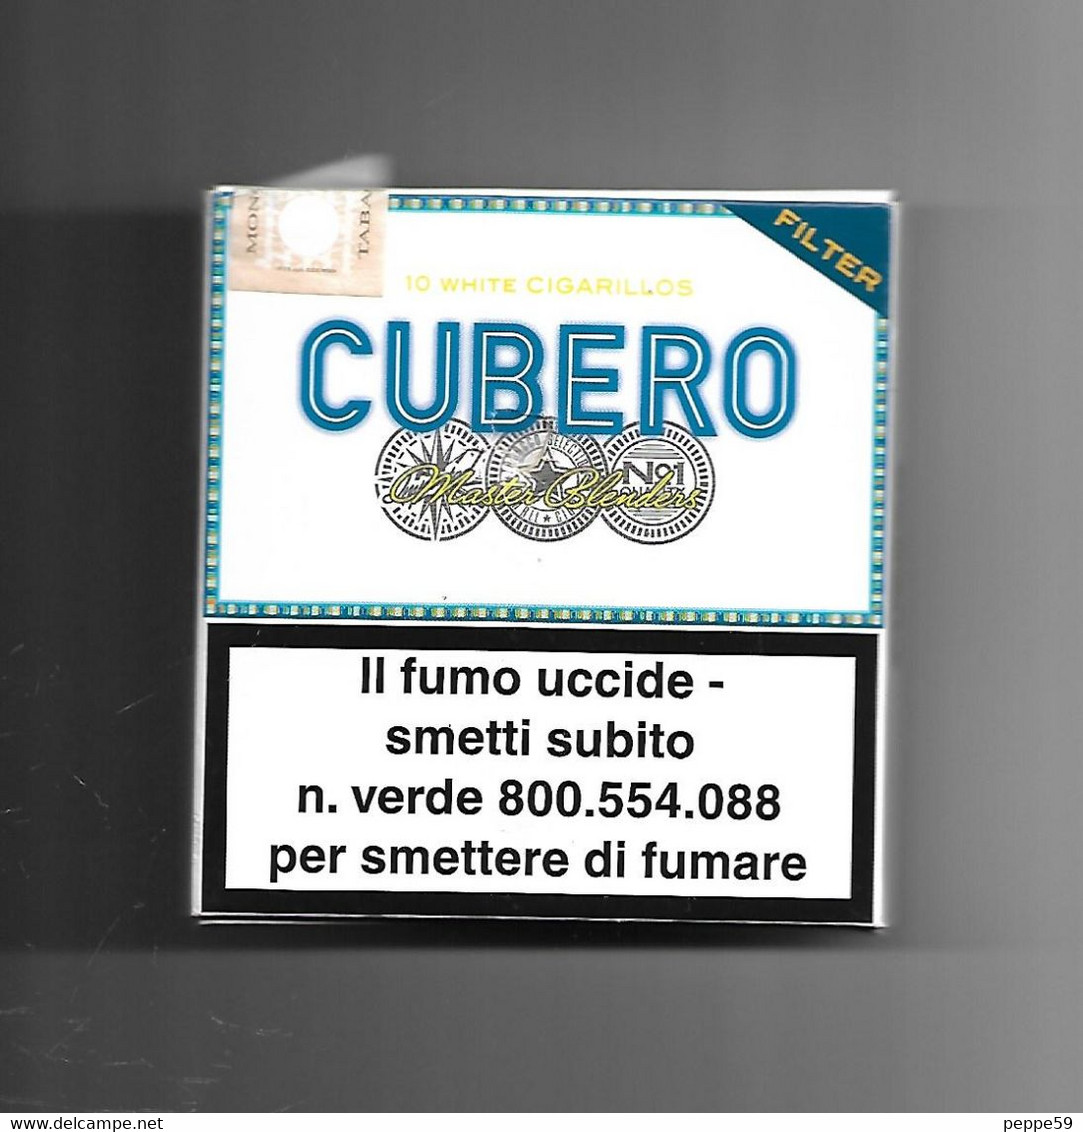 Tabacco Pacchetto Di Sigari Italia - 10 Cubero N.02  - (vuoto)  Tobacco-Tabac-Tabak-Tabaco - Empty Cigar Cabinet